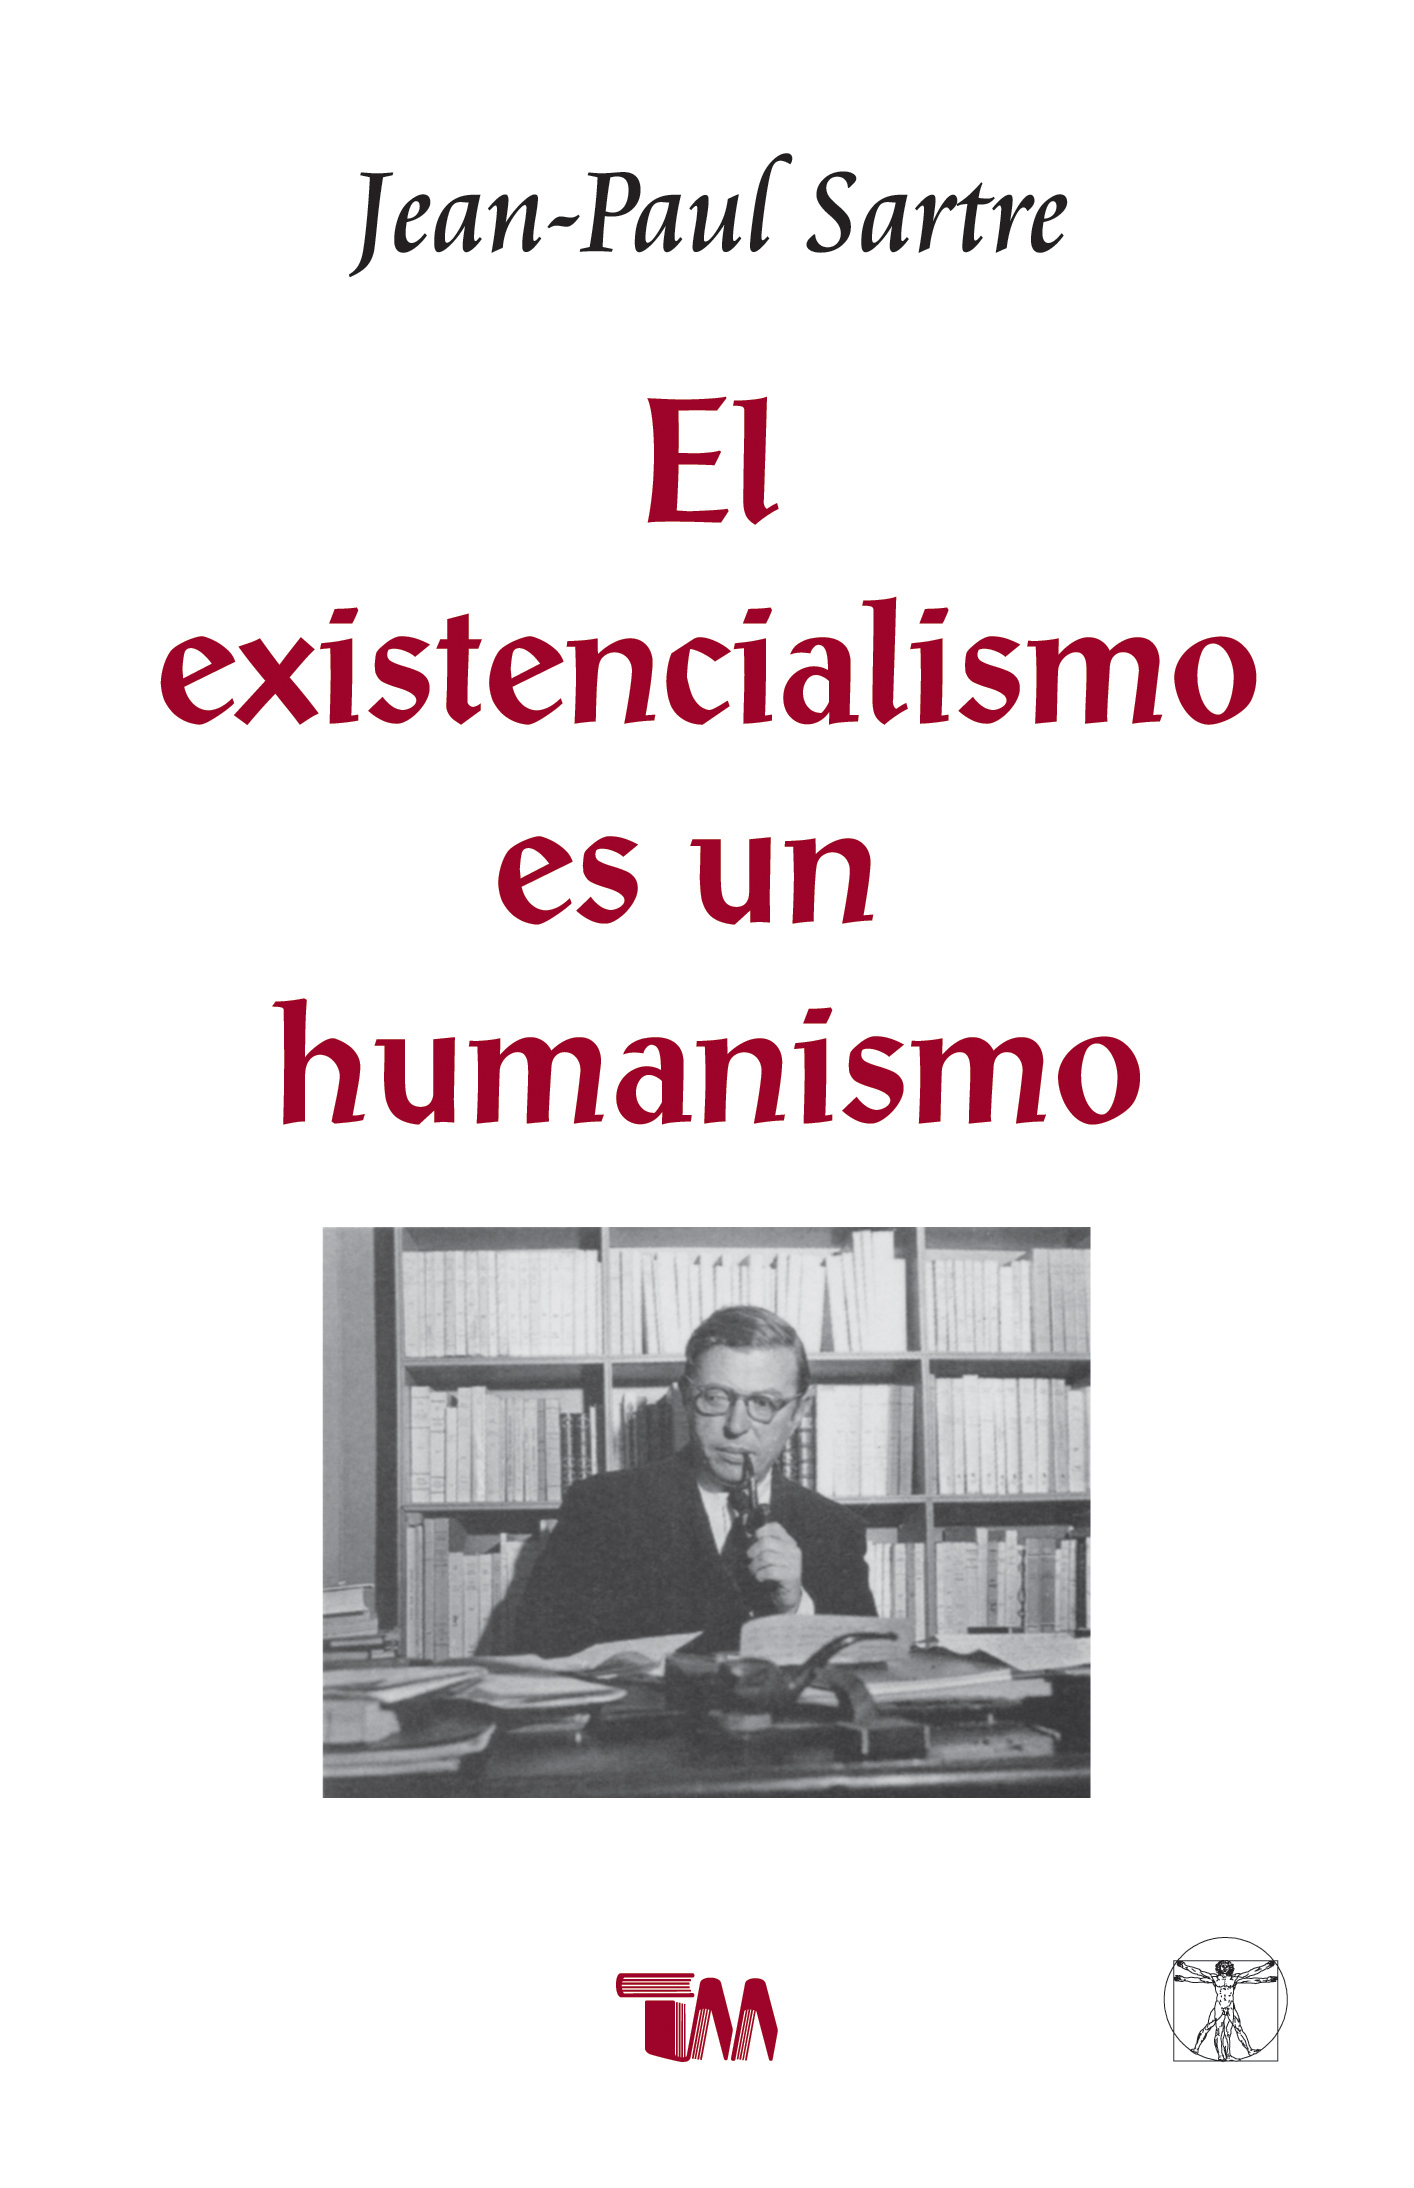 El existencialismo en su humanismo